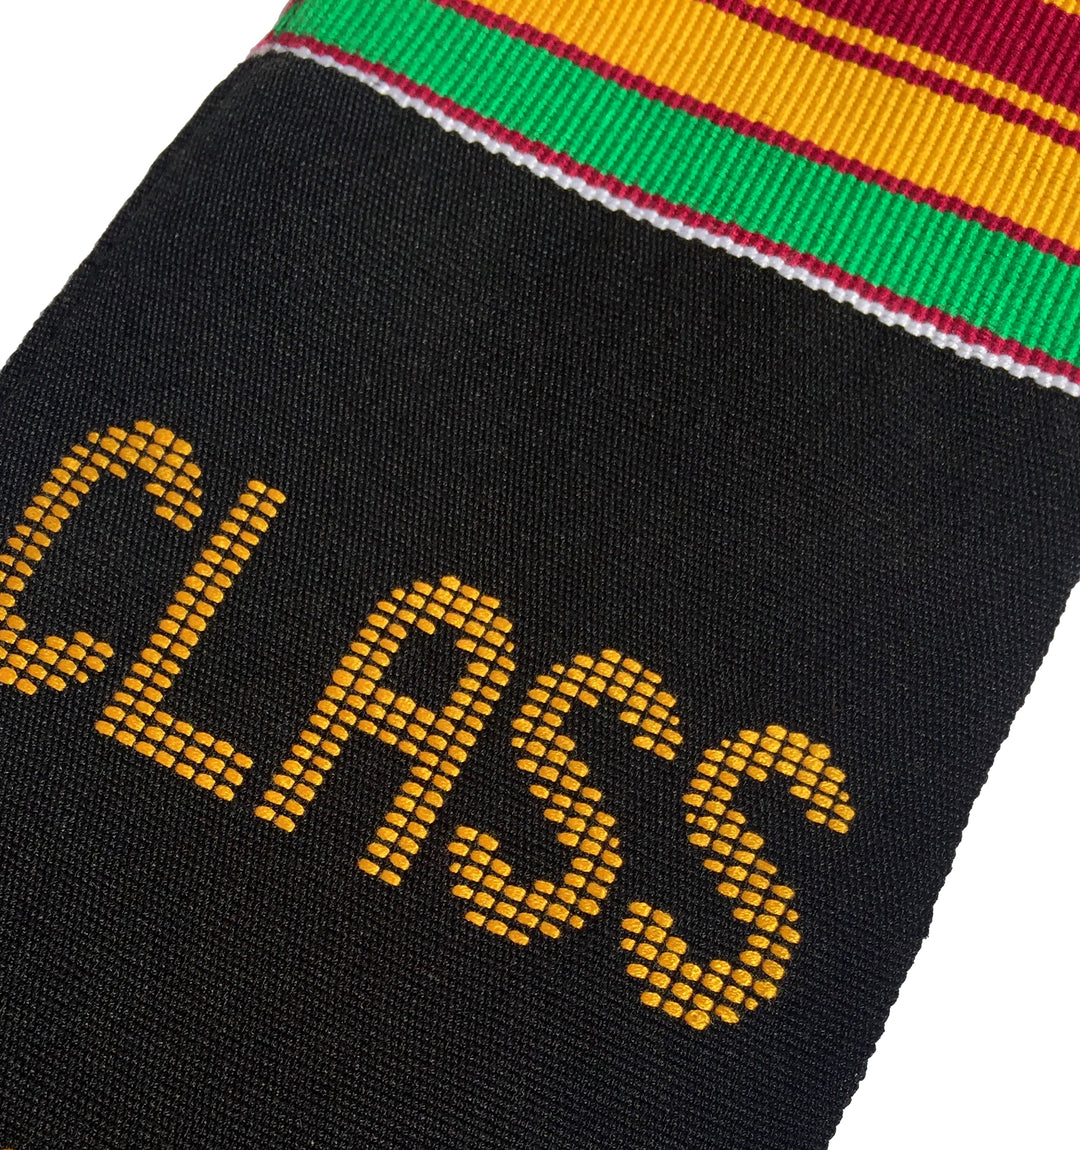 Black Grads Matter Class of 2024 Authentic Handwoven Kente Cloth Graduation Stole